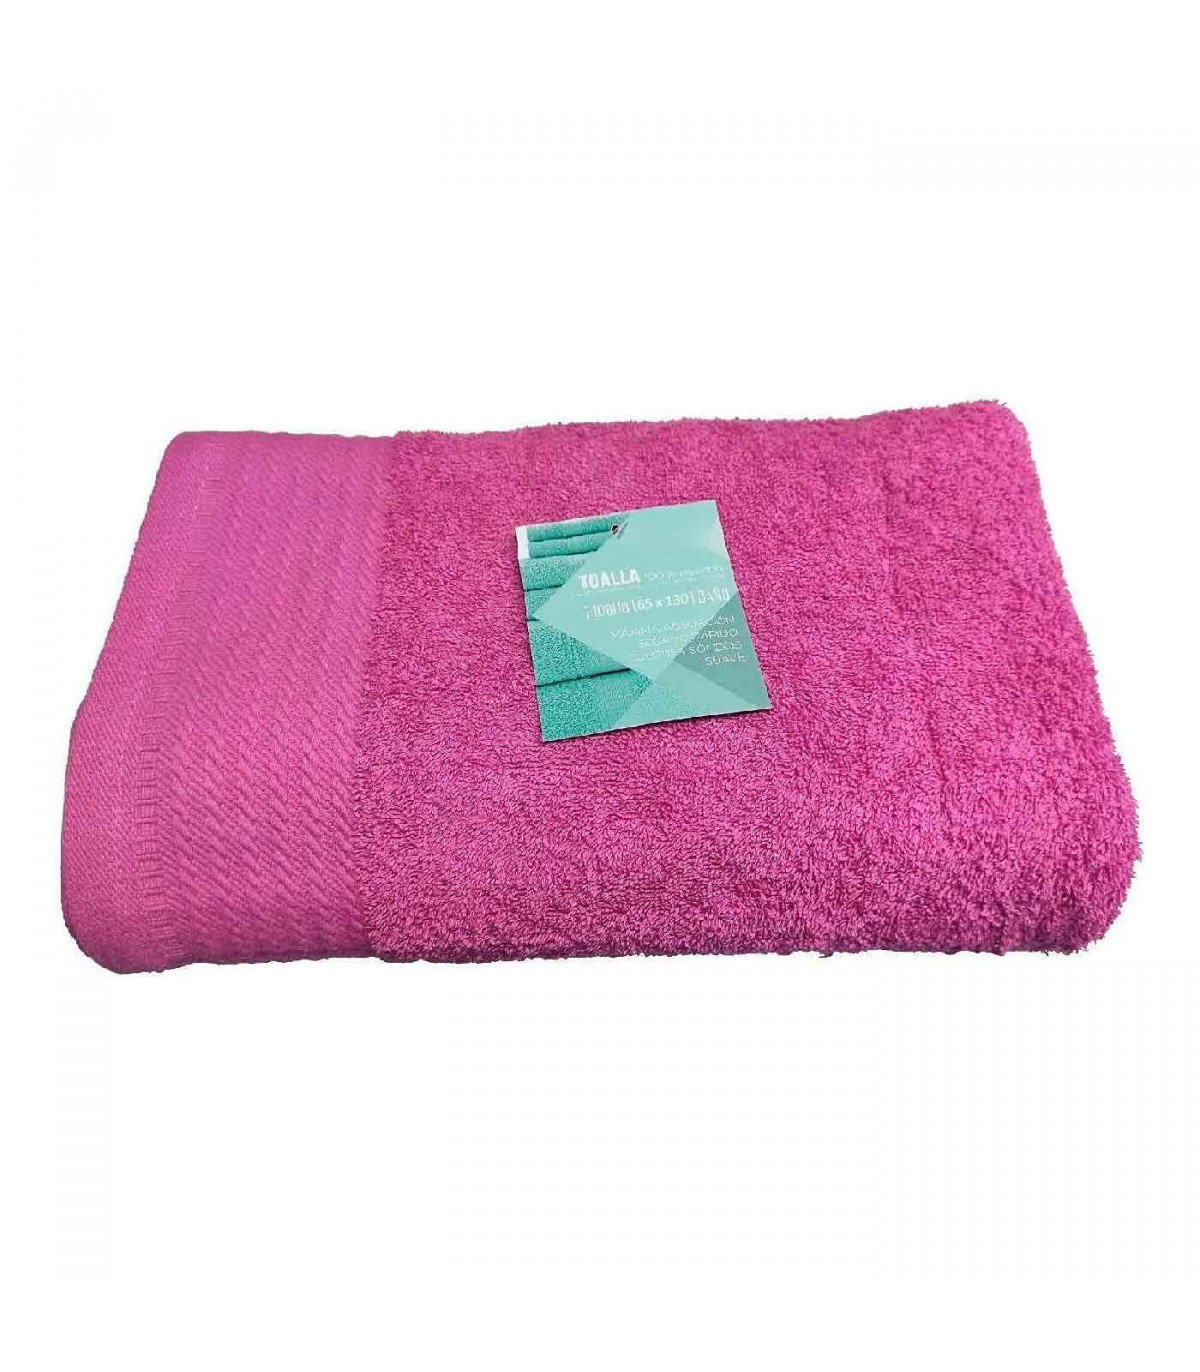 Toalla de baño fabricada con algodón de calidad color rosa 65 x 130 cm toalla  ducha suave al tacto rápido secado